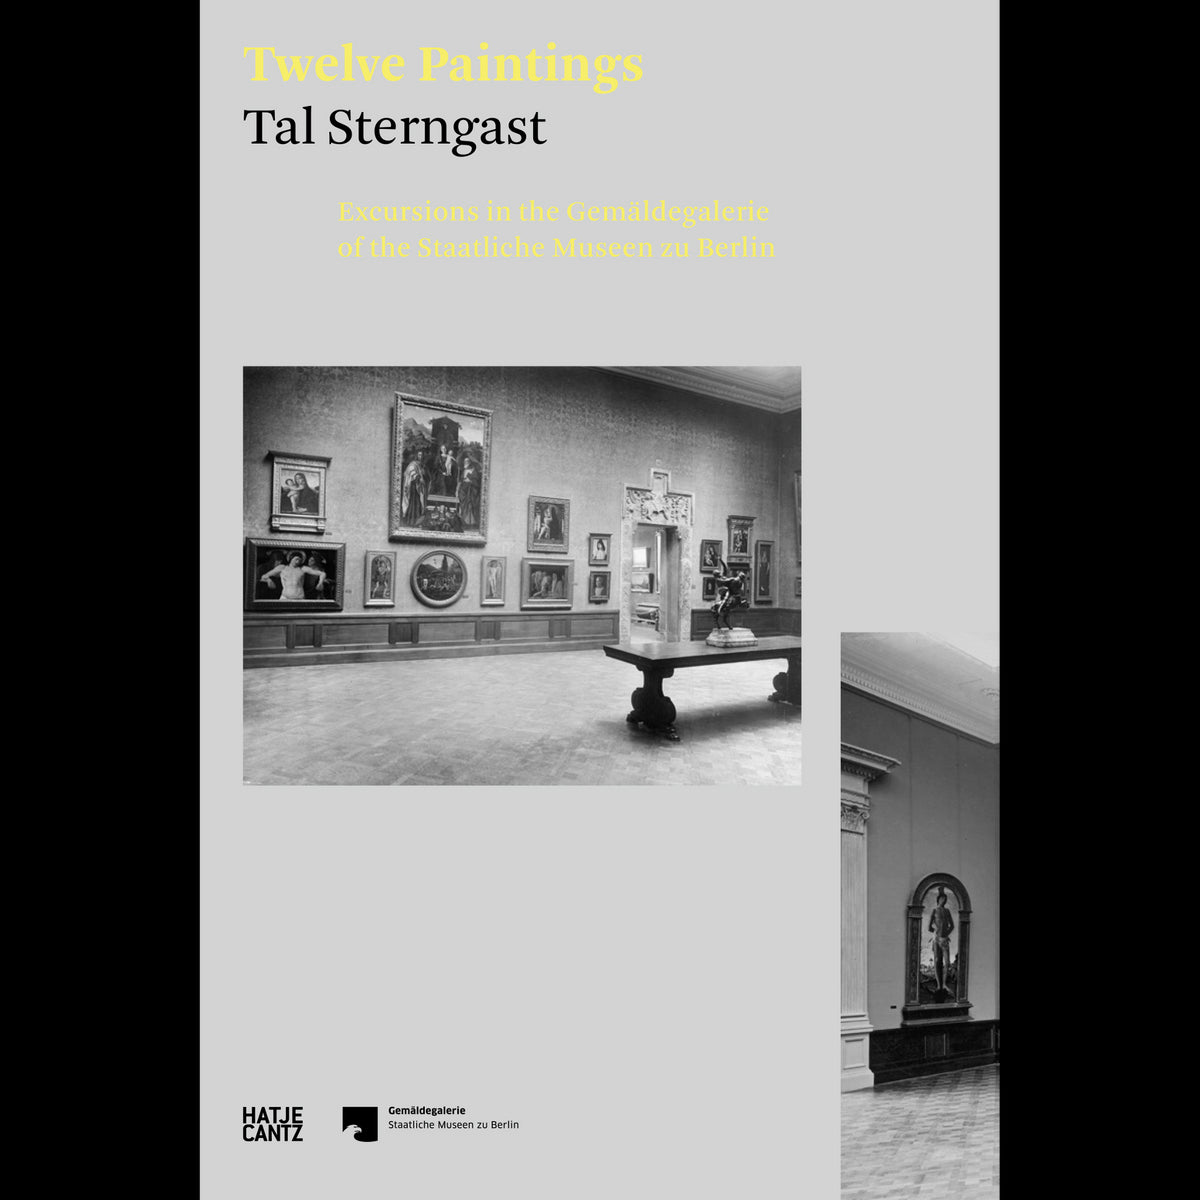 Coverbild Tal Sterngast. Twelve Paintings